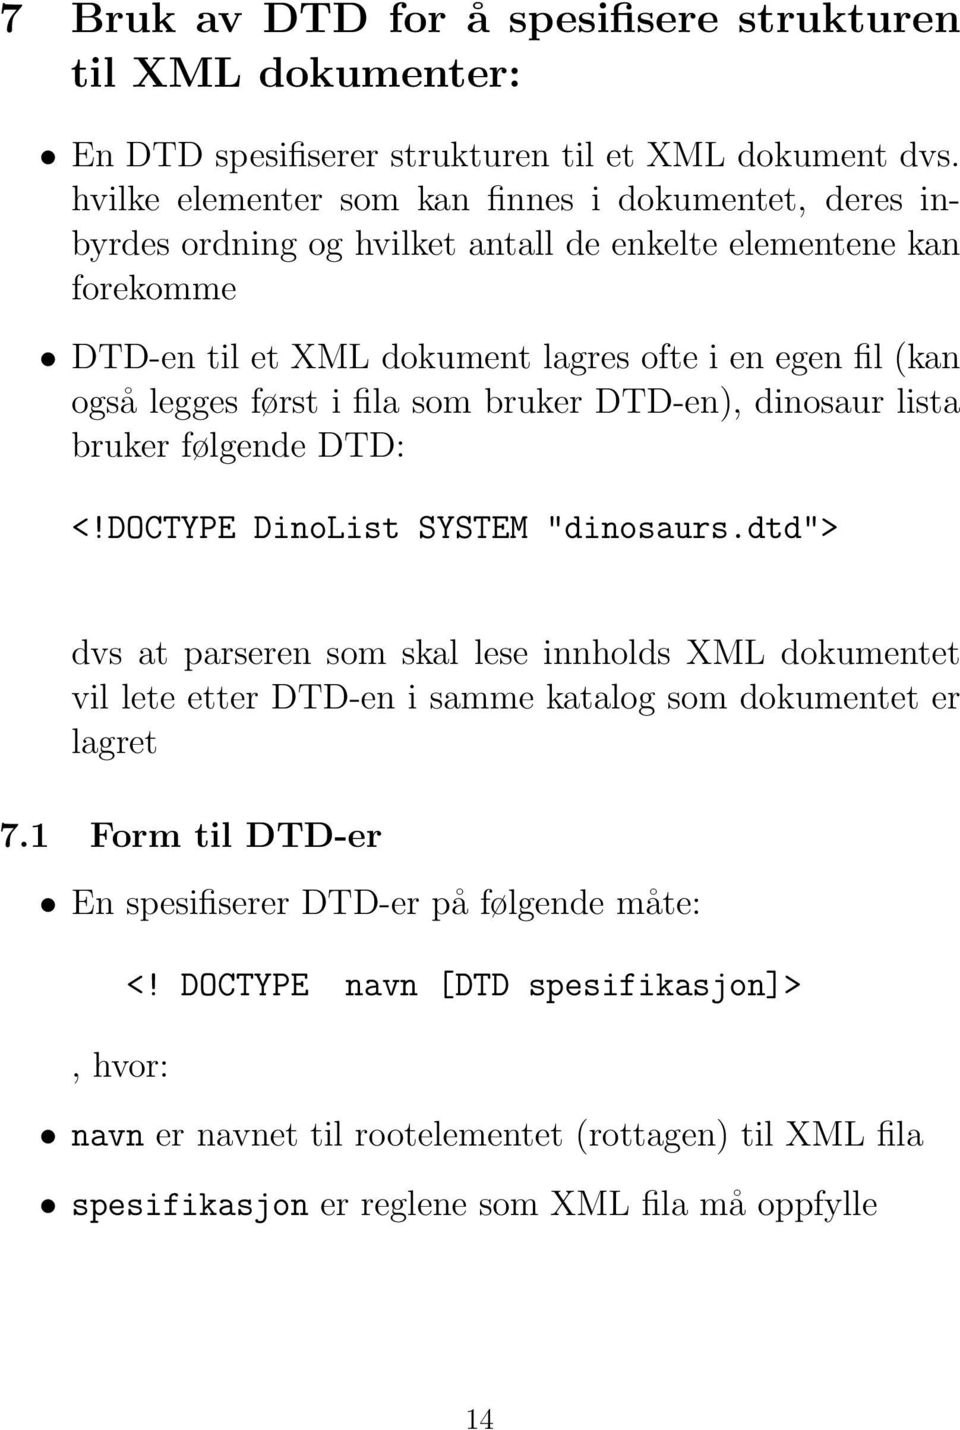 legges først i fila som bruker DTD-en), dinosaur lista bruker følgende DTD: <!DOCTYPE DinoList SYSTEM "dinosaurs.